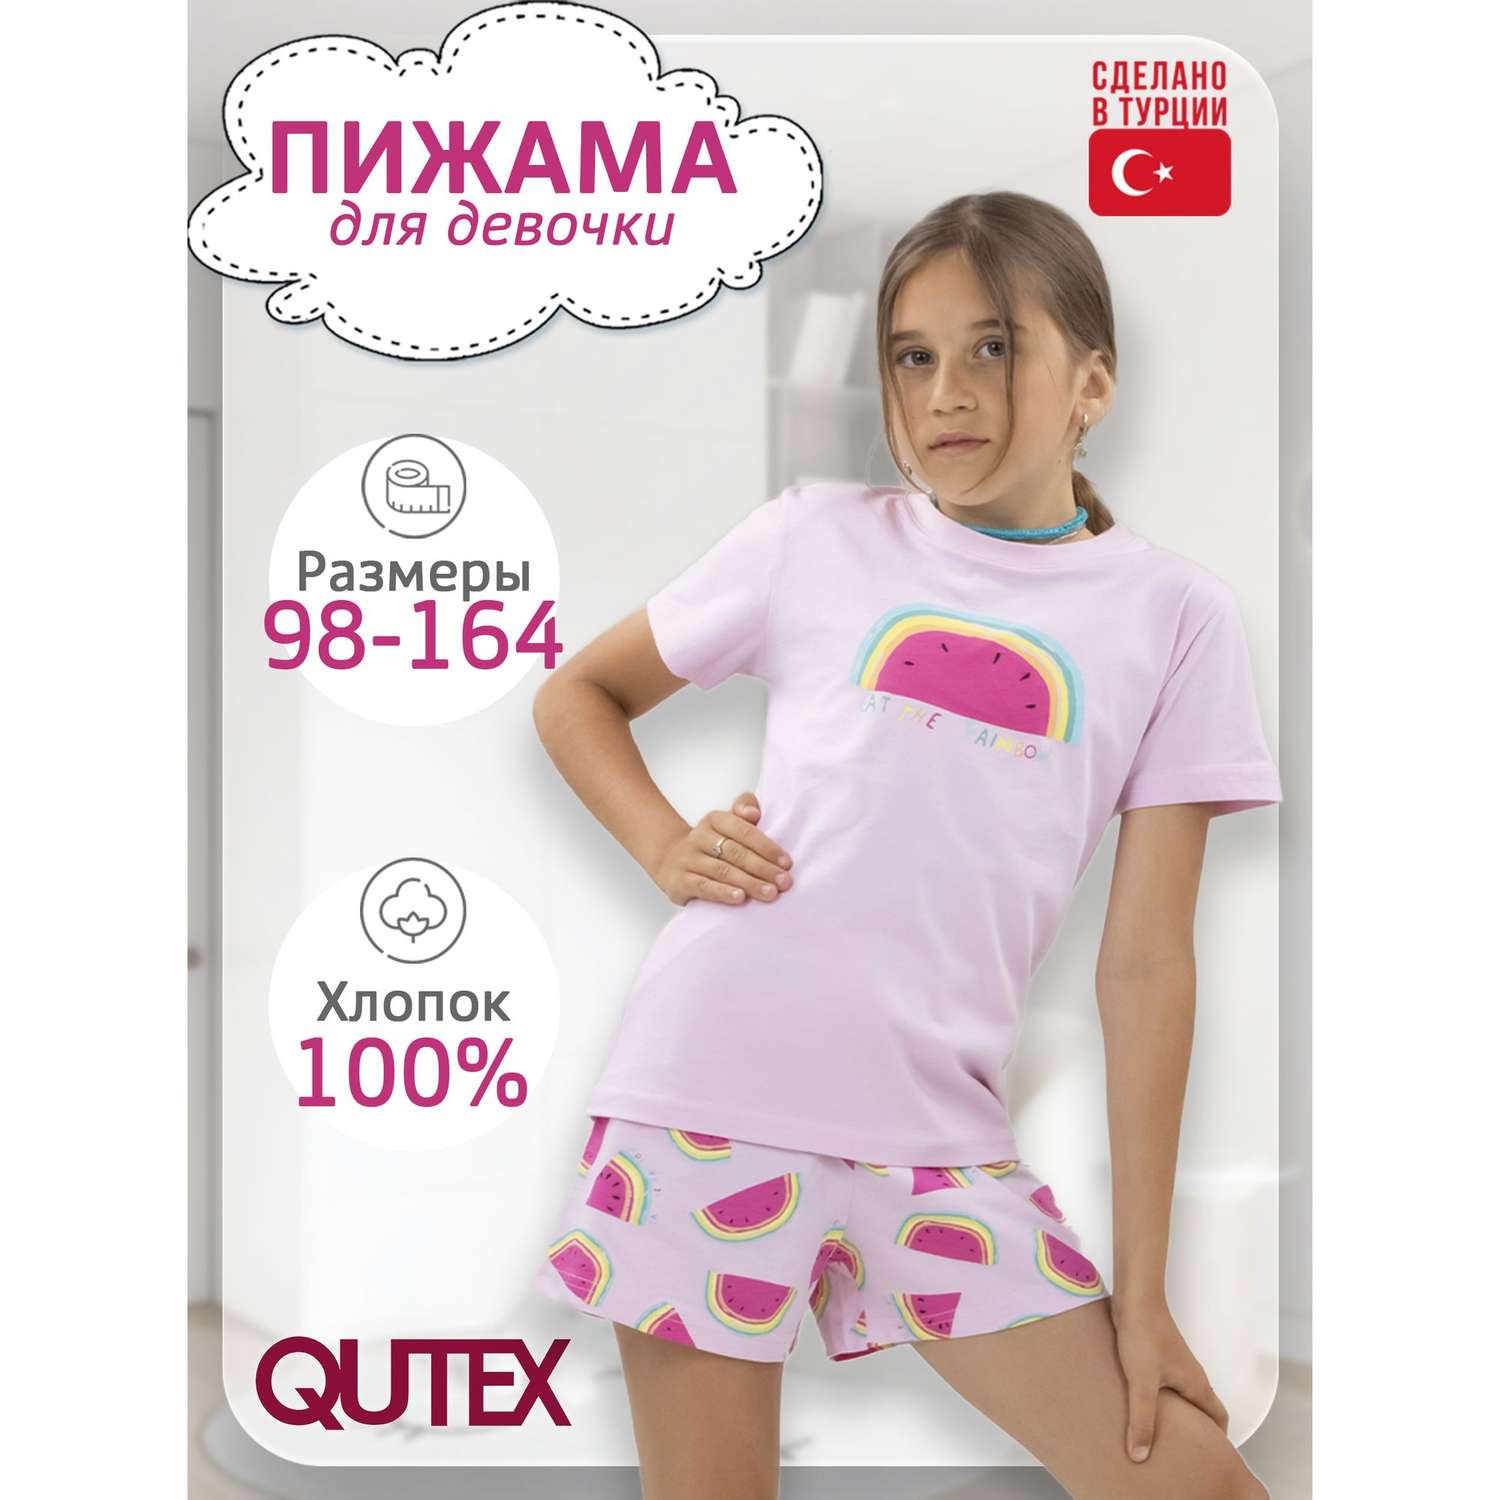 Пижама QUTEX 2301-004-1Q14 - фото 2